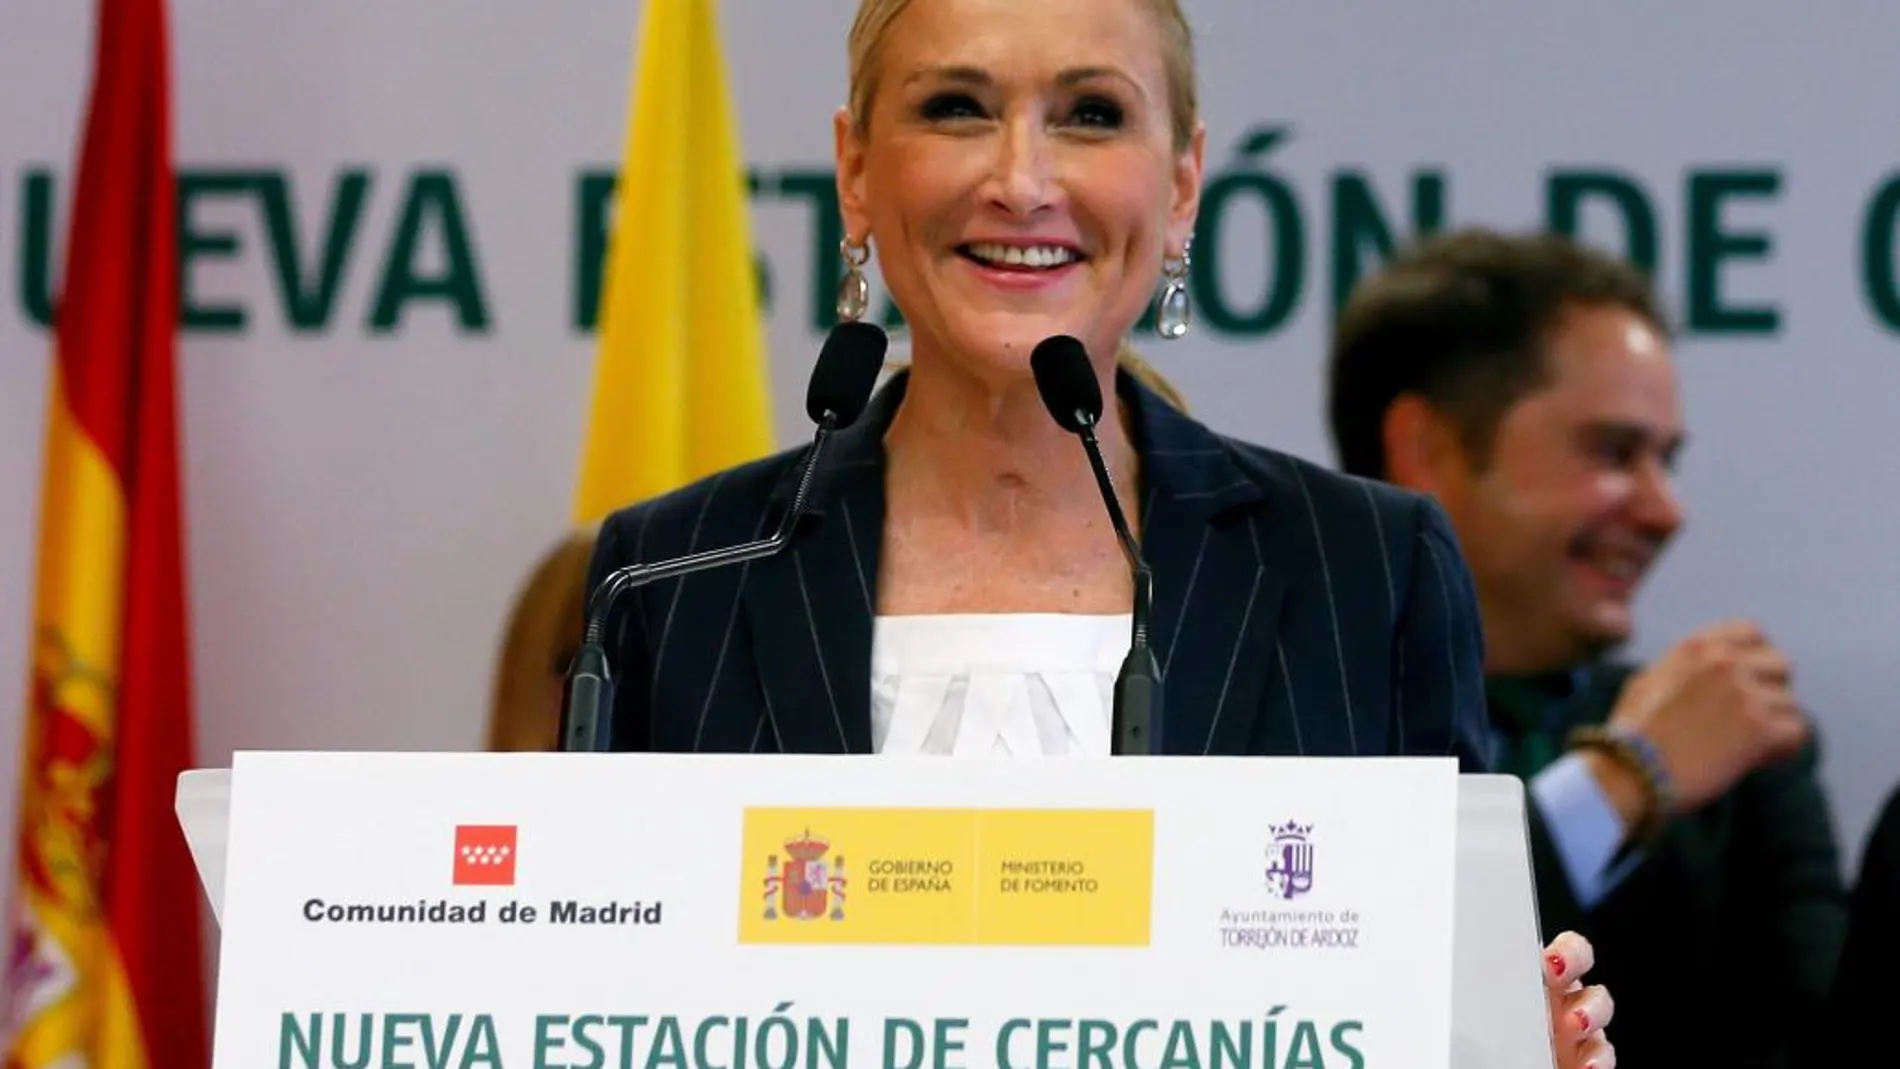 La Presidenta de la Comunidad de Madird, Cristina Cifuentes durante la inauguración de la nueva estación de cercanias, Soto del Henares, en Torrejon de Ardoz.